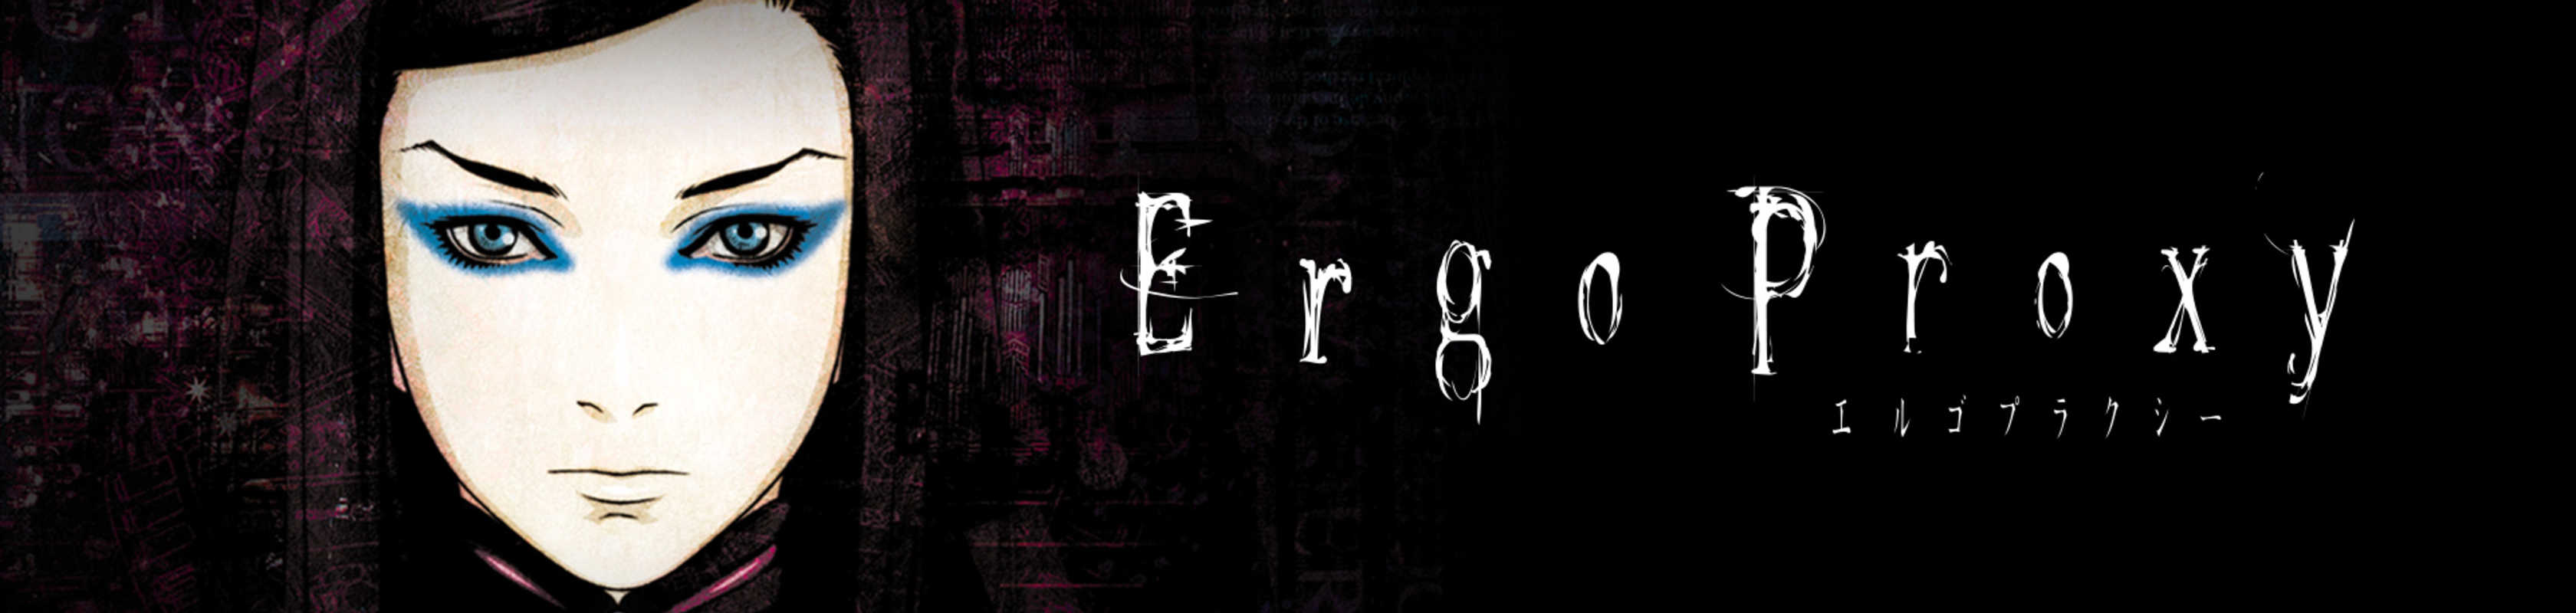 Ergo Proxy cover